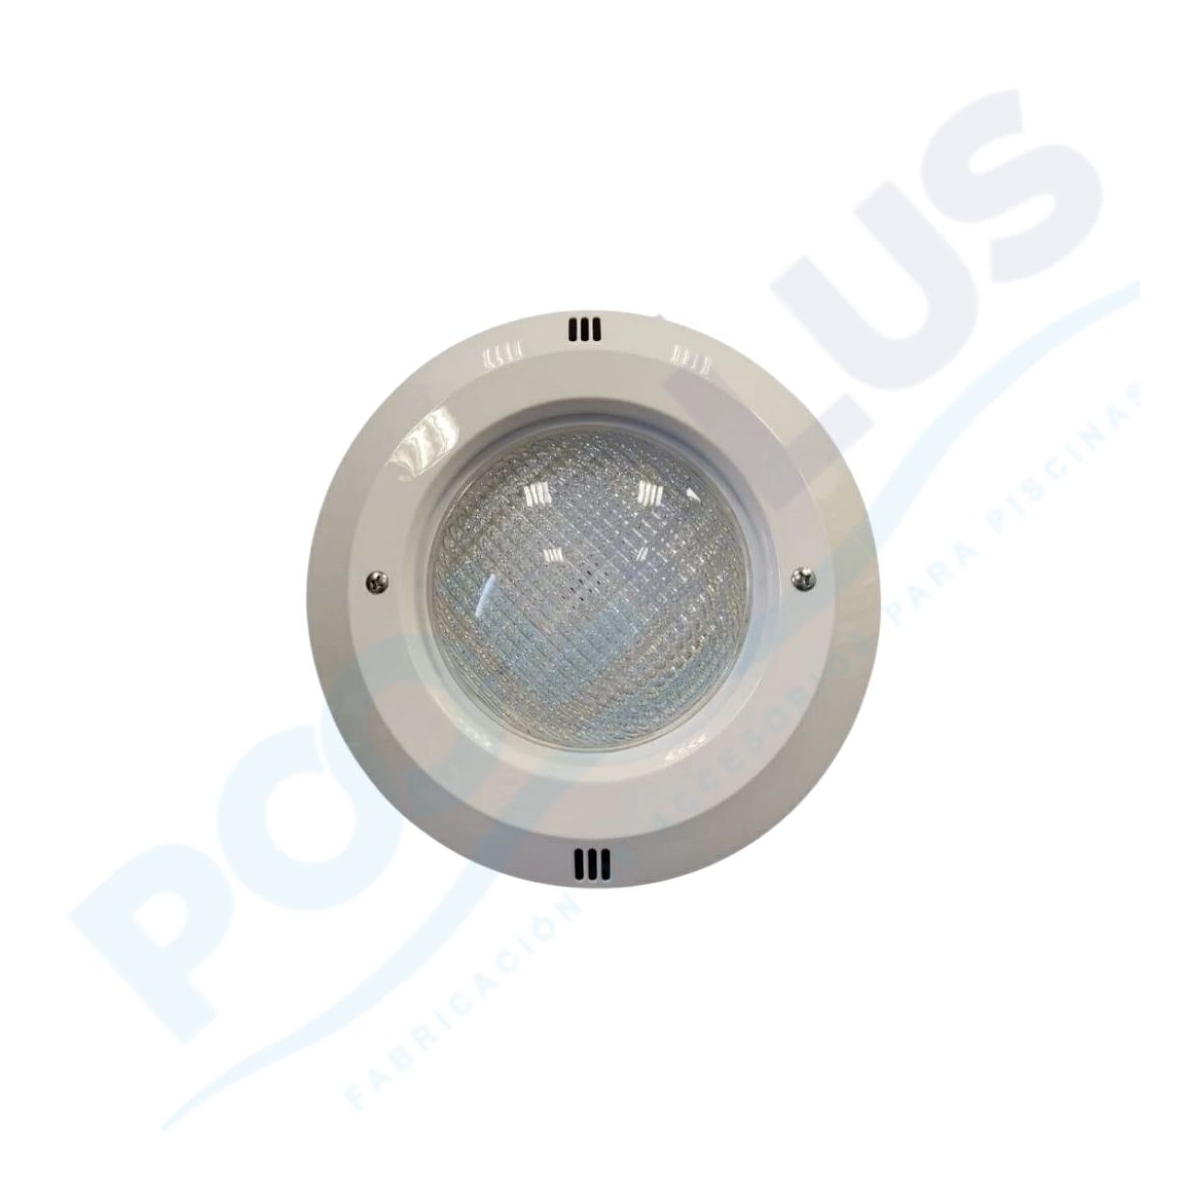 Projecteur LED Pleine Niche 25W Blanc PAR56 TTMPool